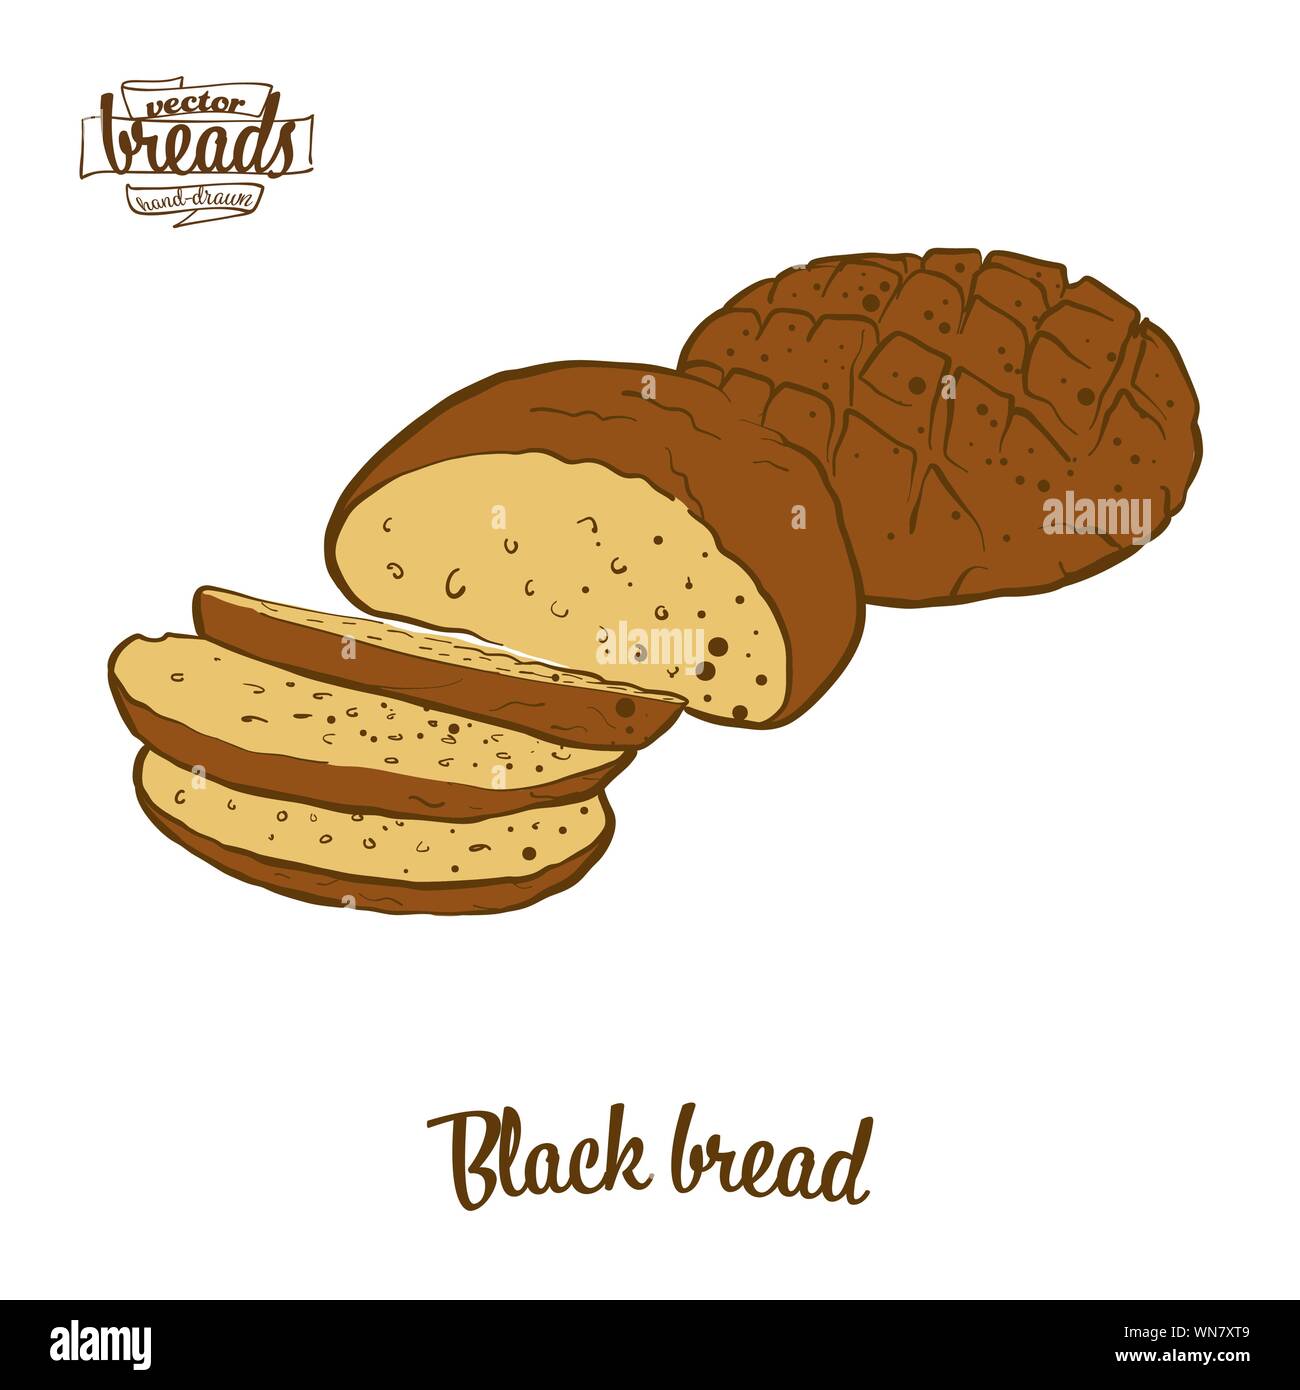 Farbige Zeichnung der schwarze Brot Brot. Vector Illustration von Roggenbrot essen, in der Regel in Europa bekannt. Farbige Brot Skizzen. Stock Vektor